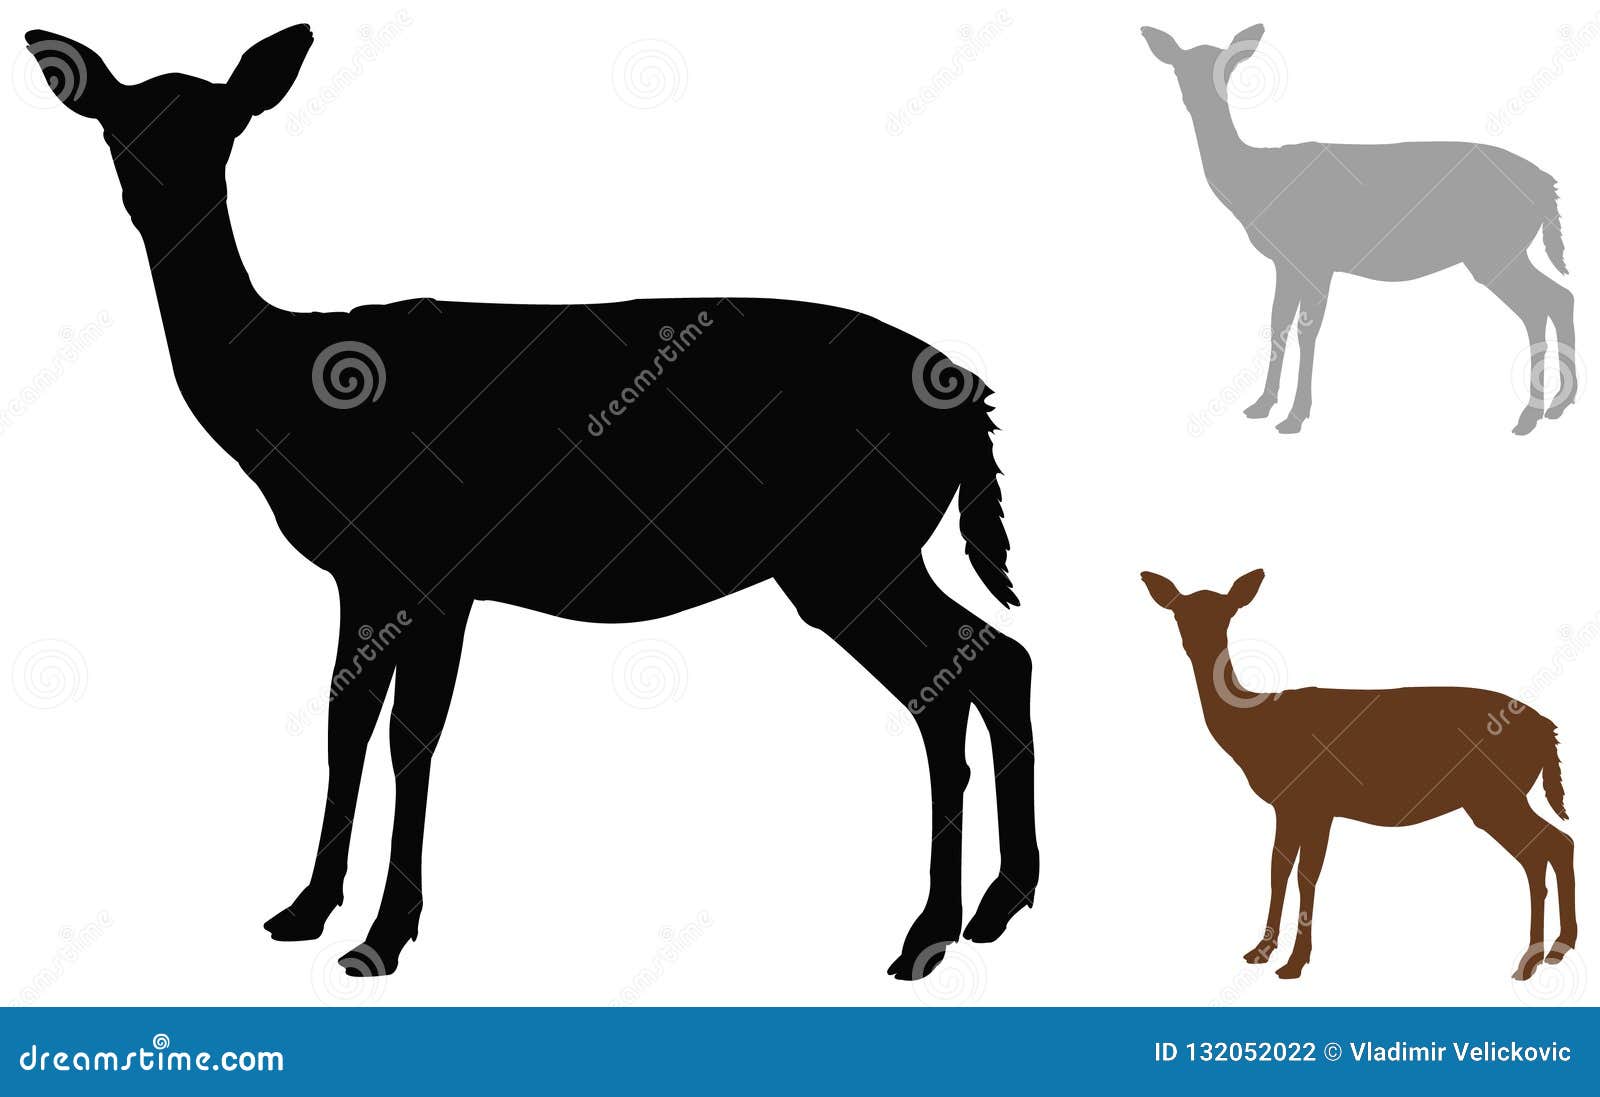 doe or deer silhouette - hoofed ruminant mammal